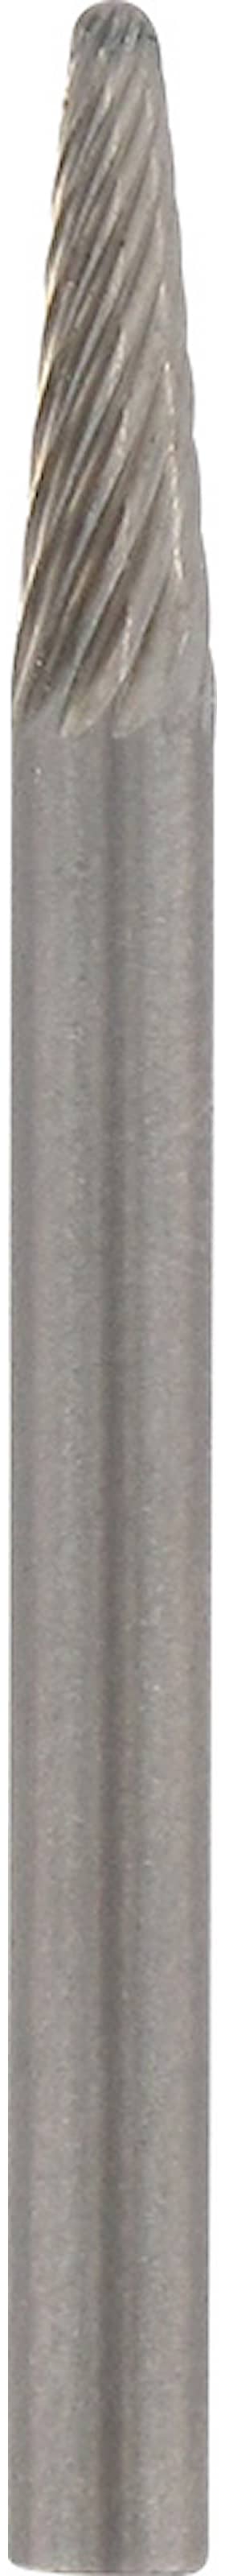 Dremel slibestift karbid 3,2 mm hårdmetal 9910